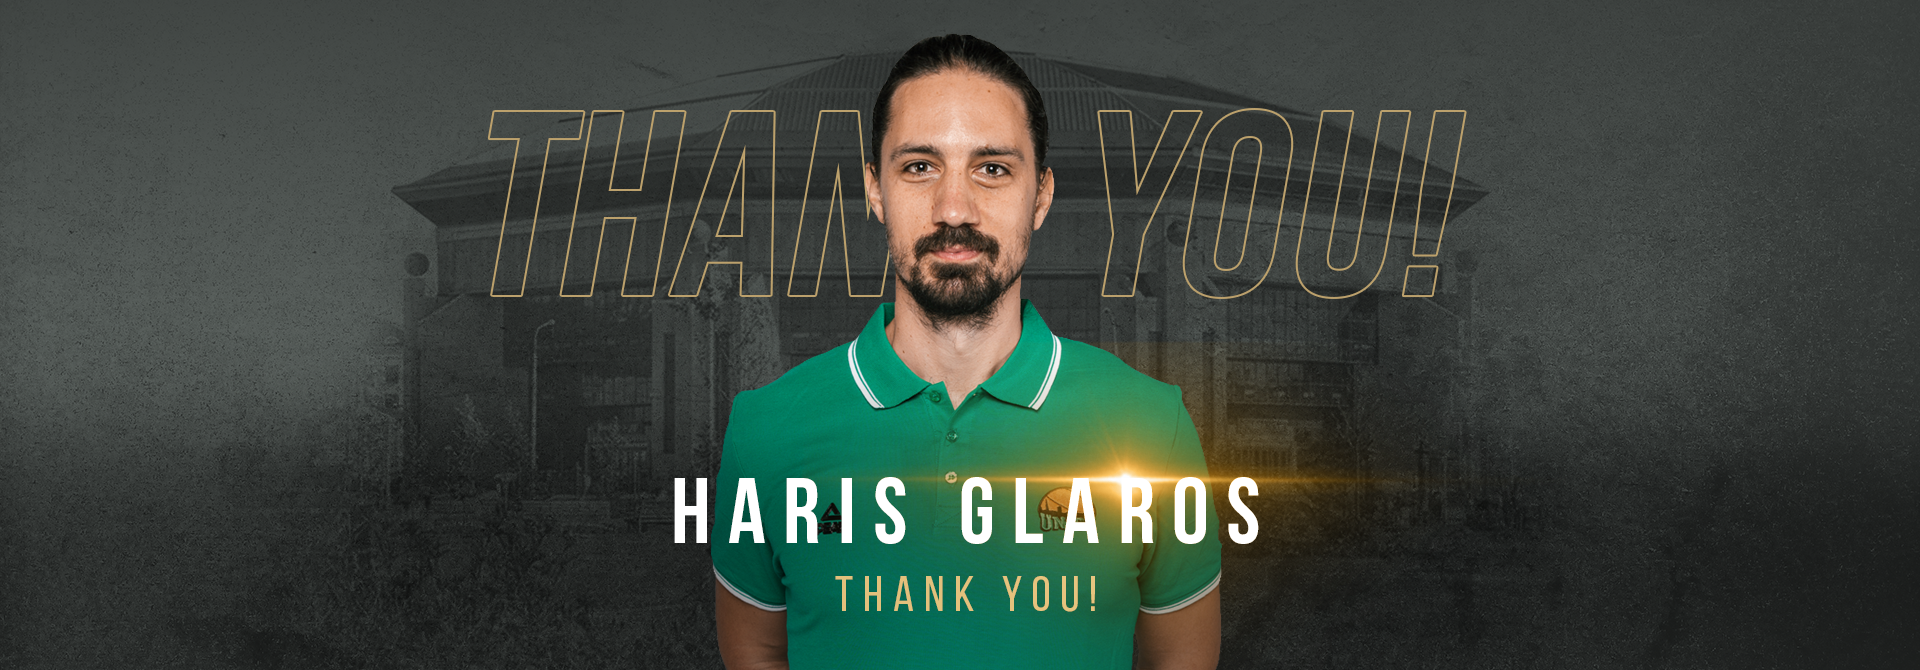 Харис Гларос покидает клуб по истечении контракта